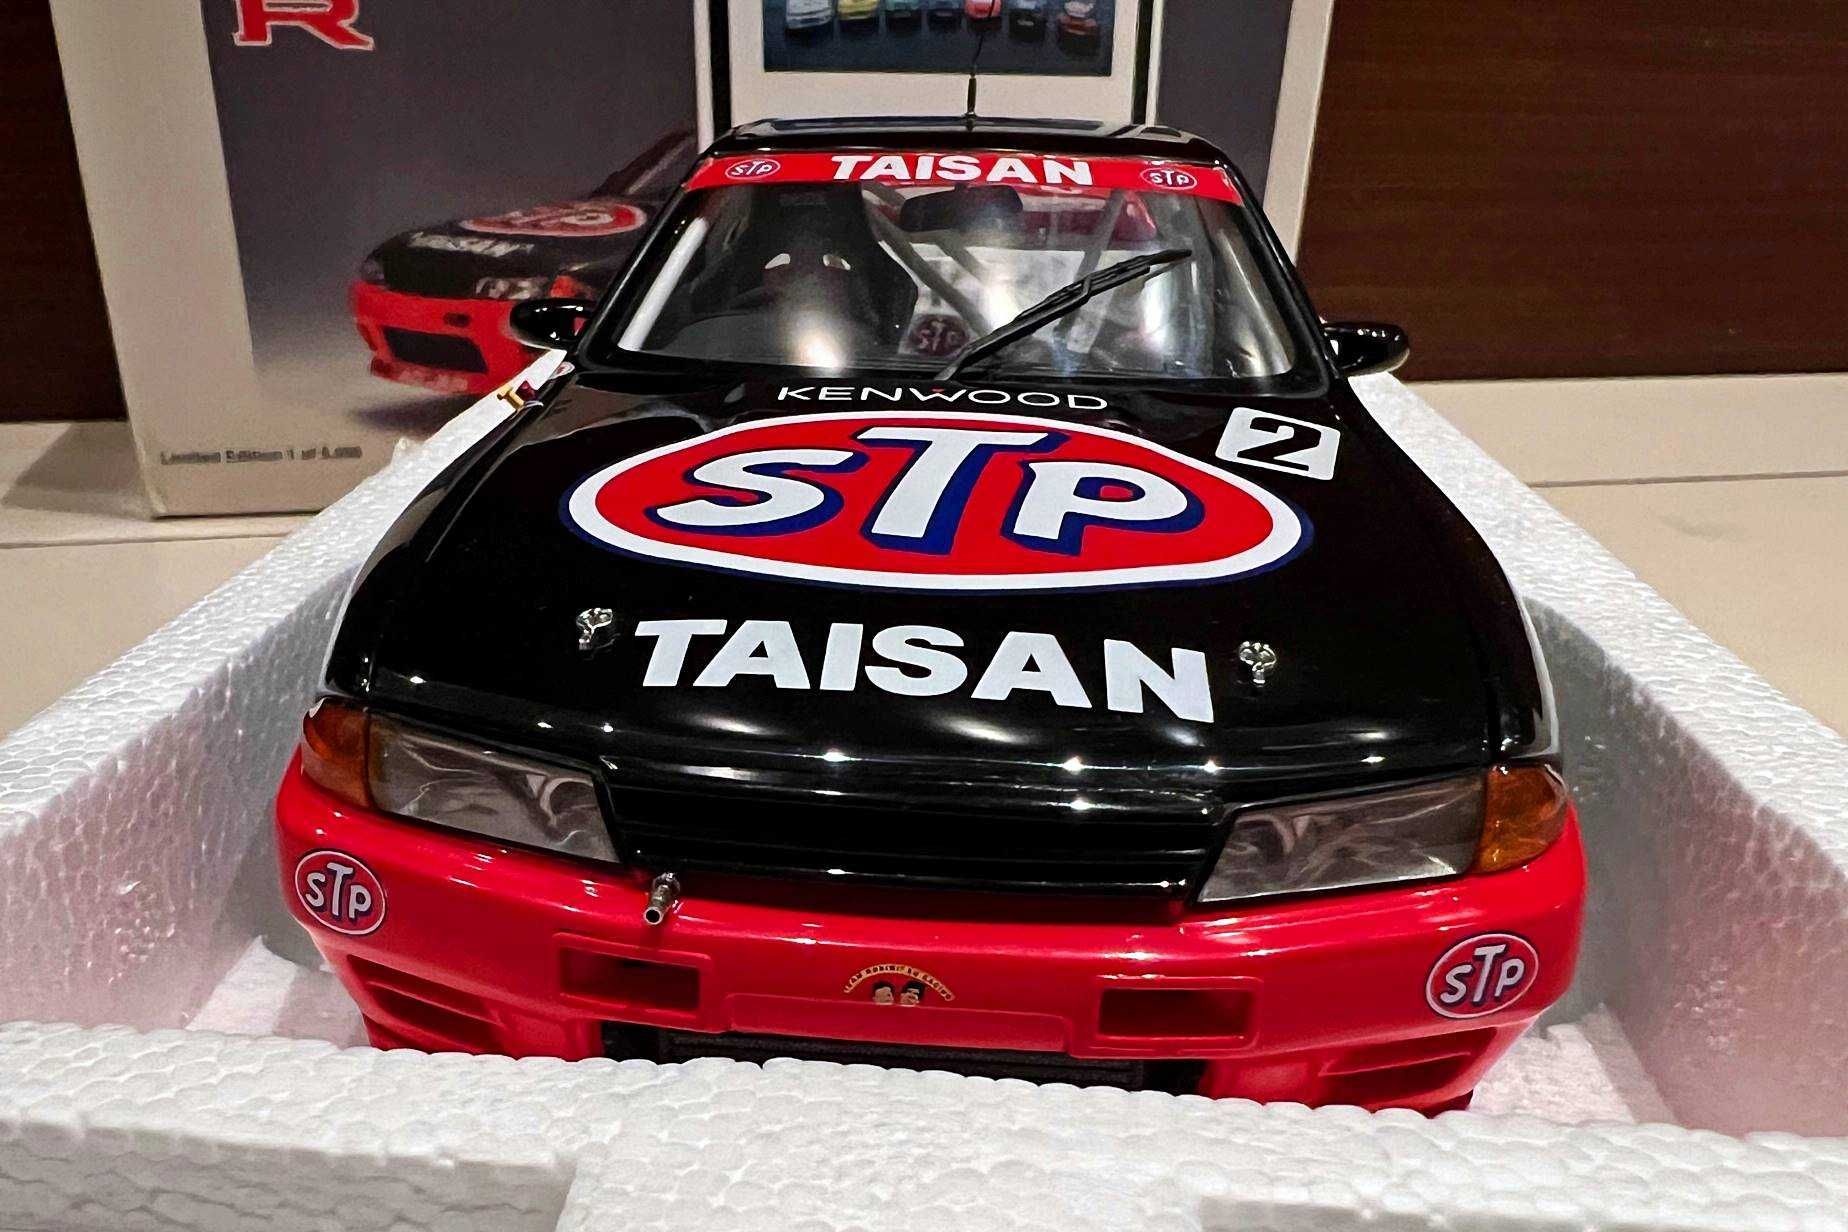 Model 1:18 AUTOart Nissan Skyline GT-R (R32) 1993 STP Taisan #2